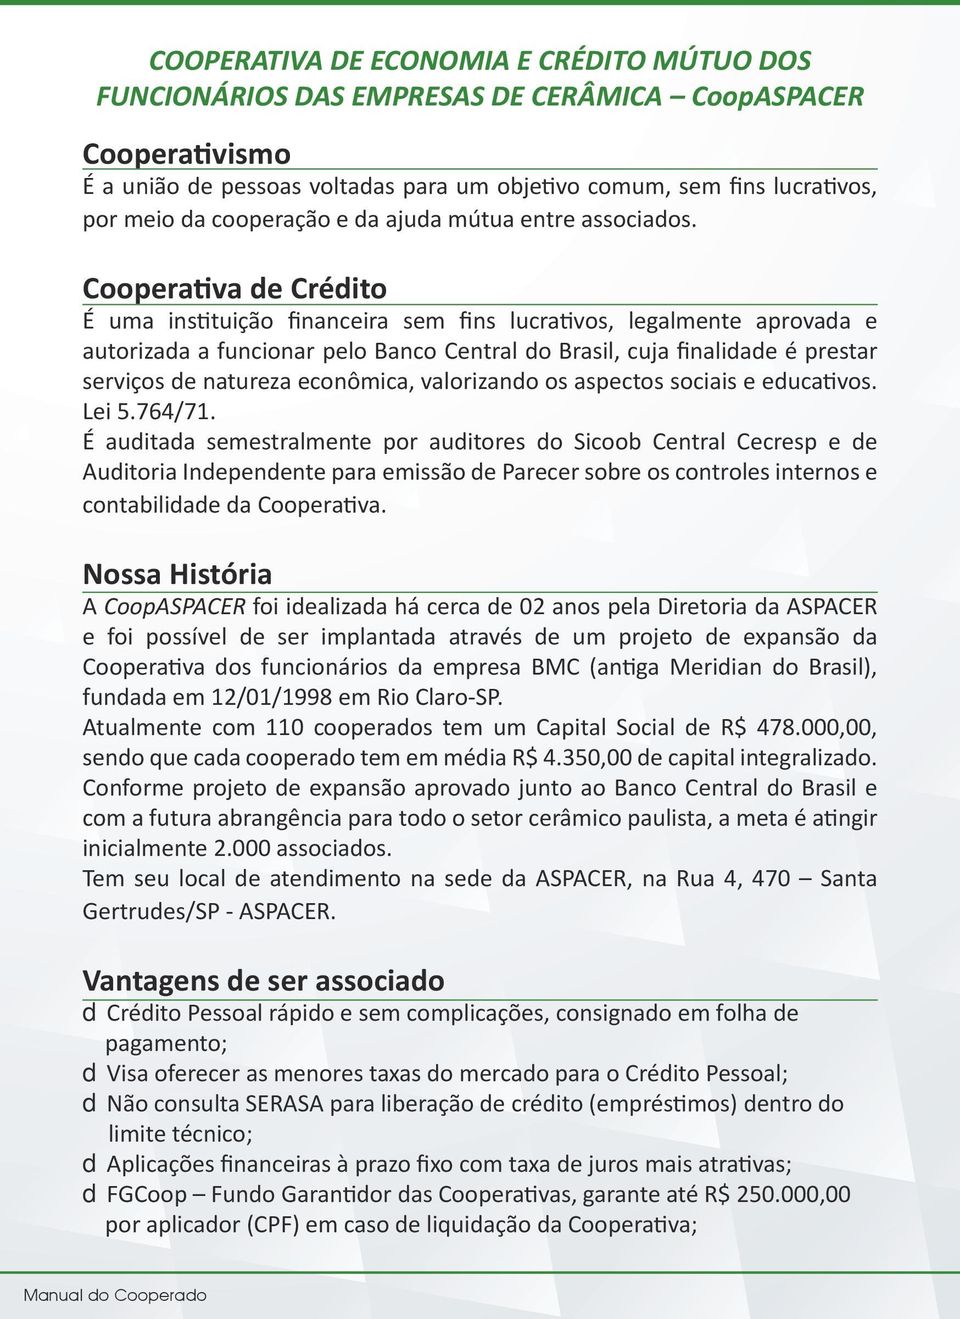 Cooperativa de Crédito É uma instituição financeira sem fins lucrativos, legalmente aprovada e autorizada a funcionar pelo Banco Central do Brasil, cuja finalidade é prestar serviços de natureza